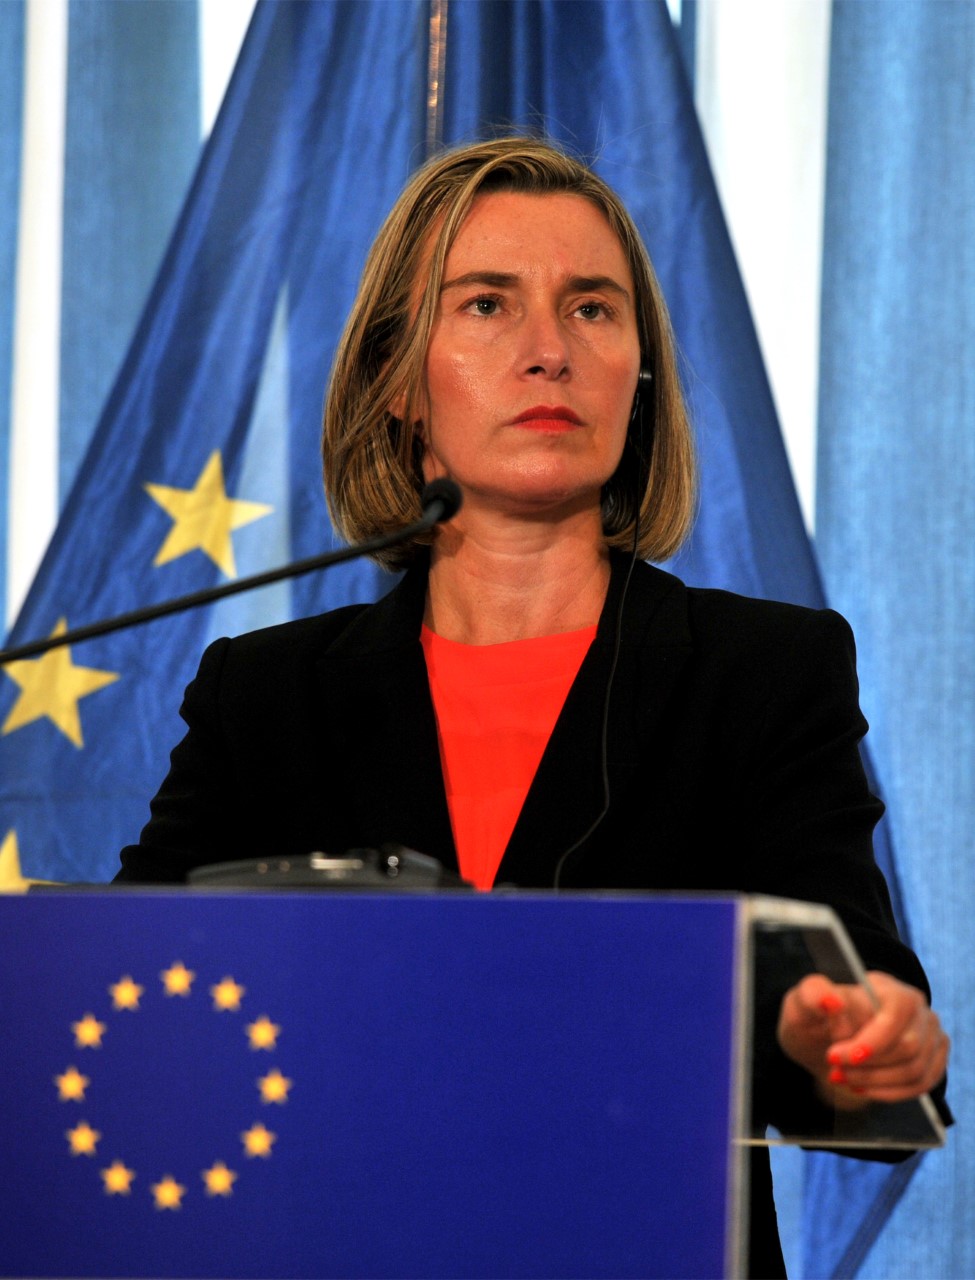 الممثلة العليا للاتحاد الأوروبي للشؤون الخارجية والسياسية والأمنية ونائبة رئيس المفوضية الأوروبية فيديريكا موغيريني